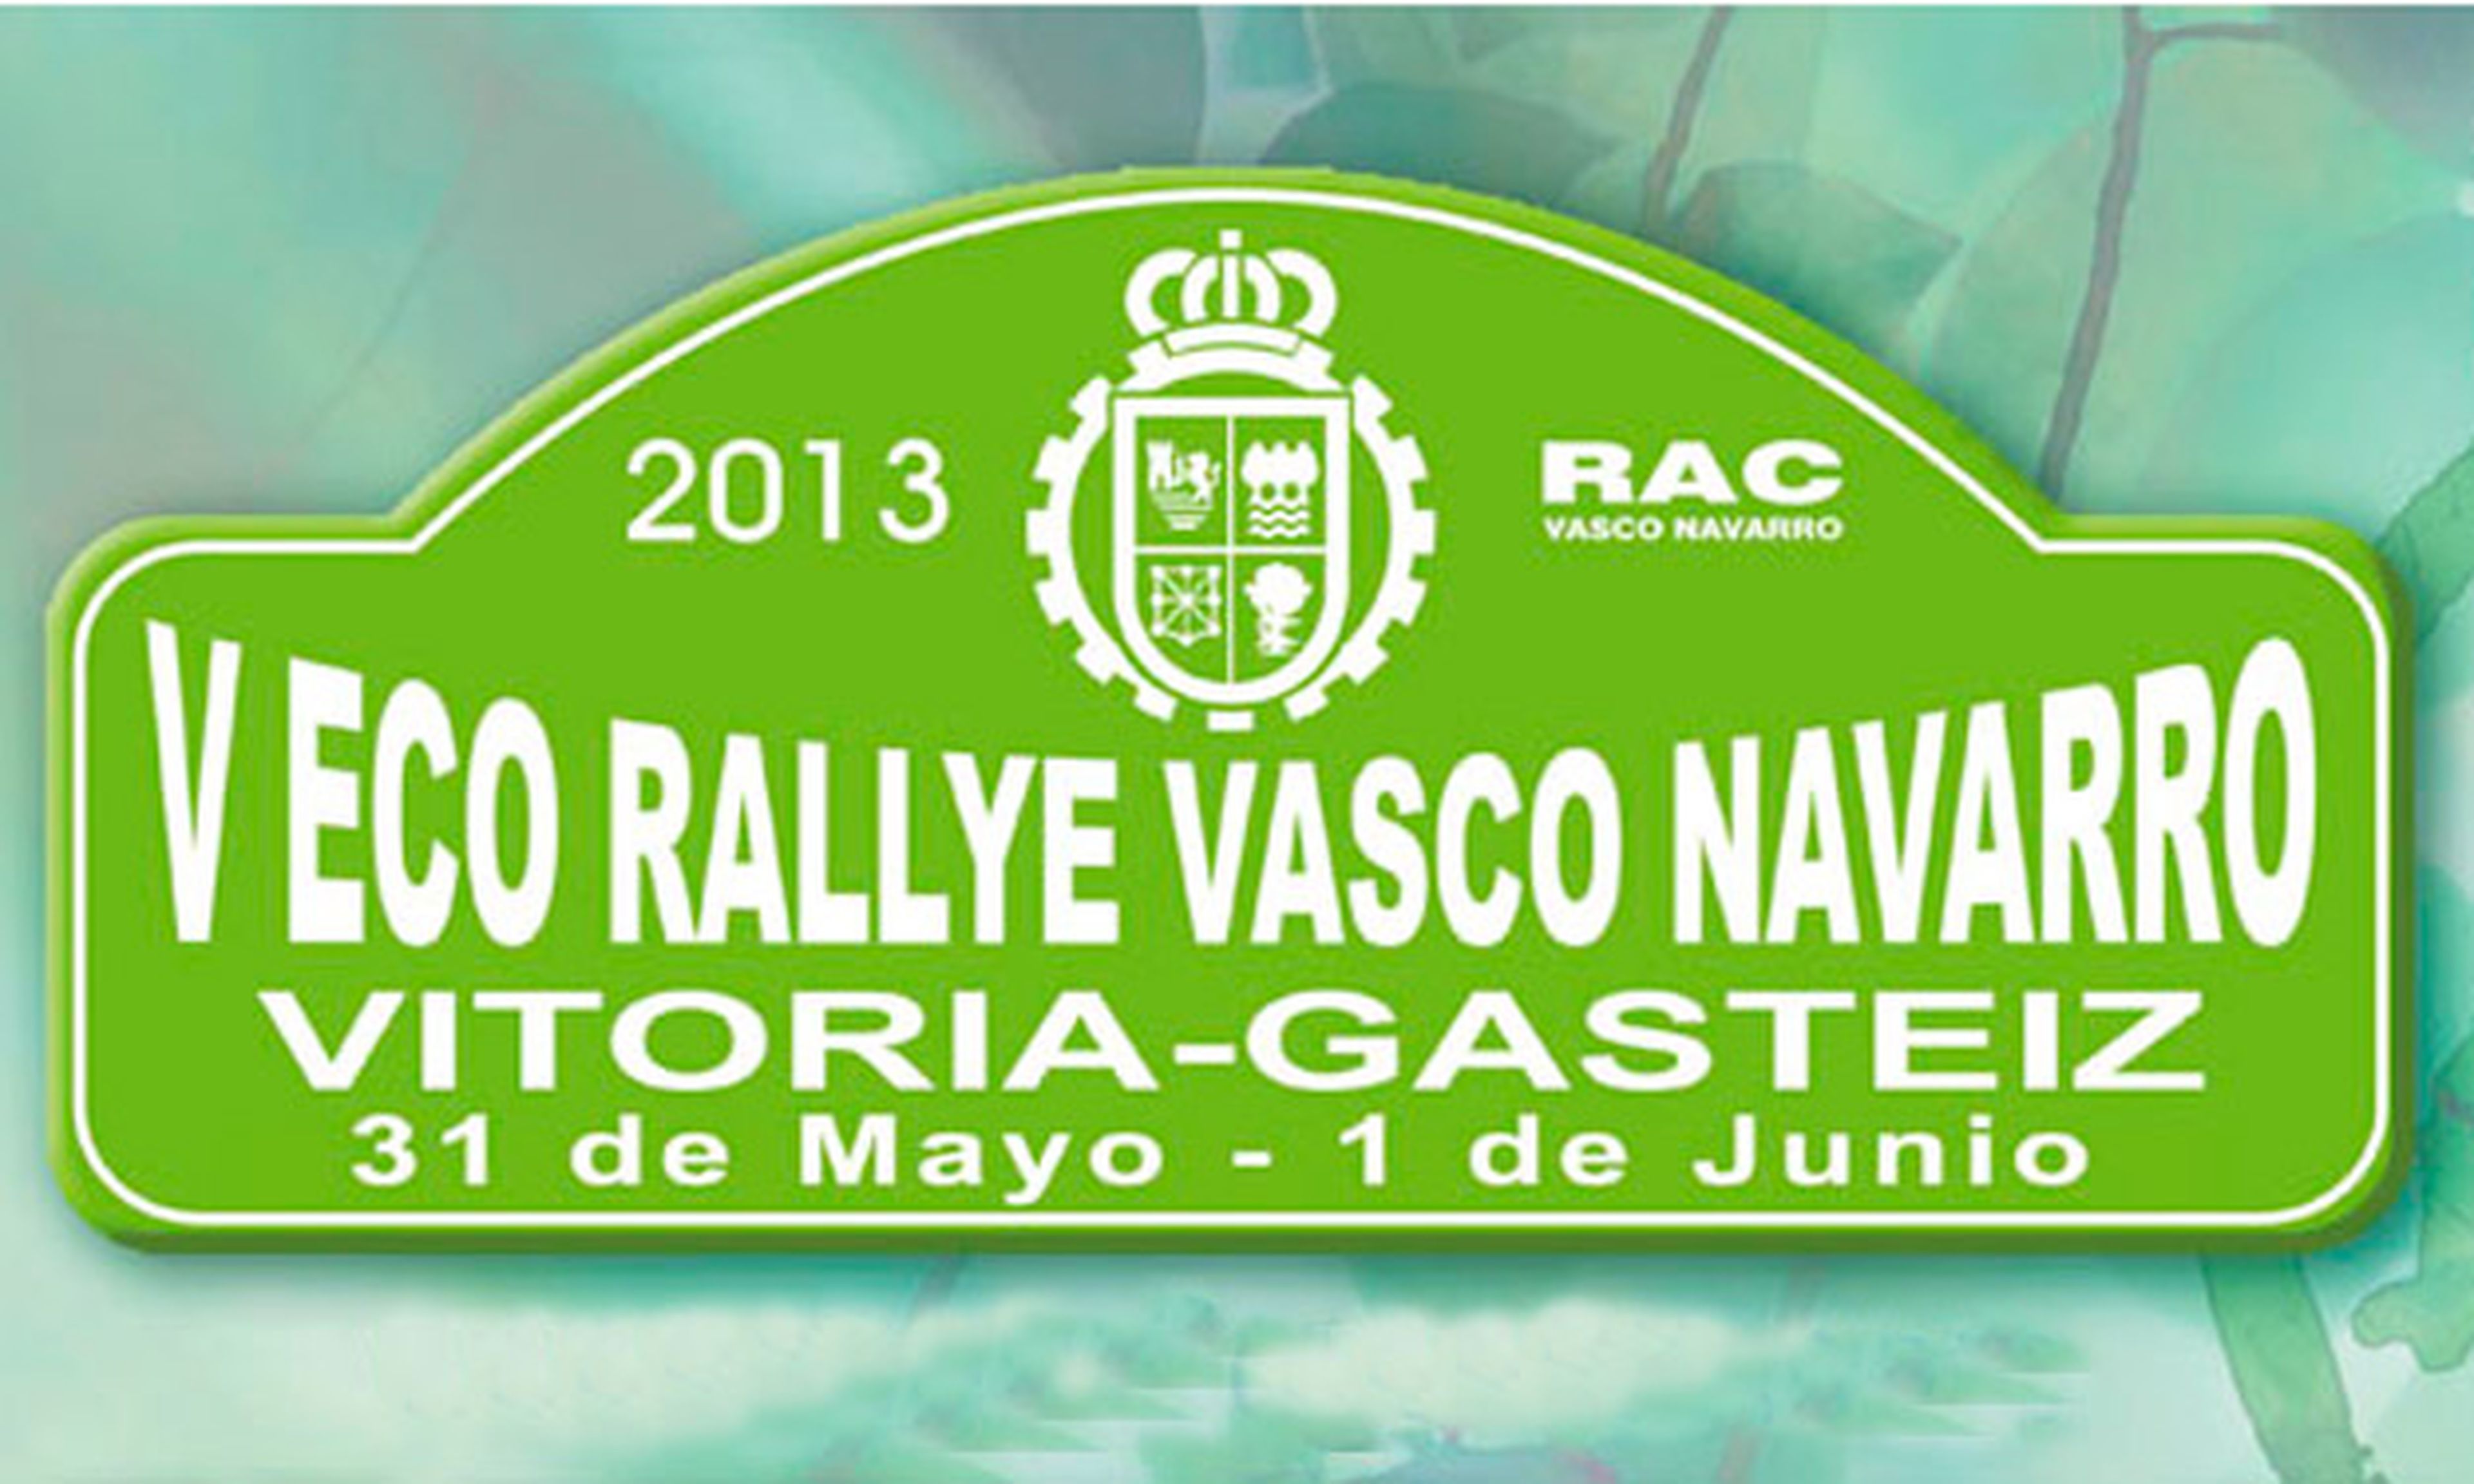 V Eco Rallye Vasco Navarro, AUTO BILD estará compitiendo